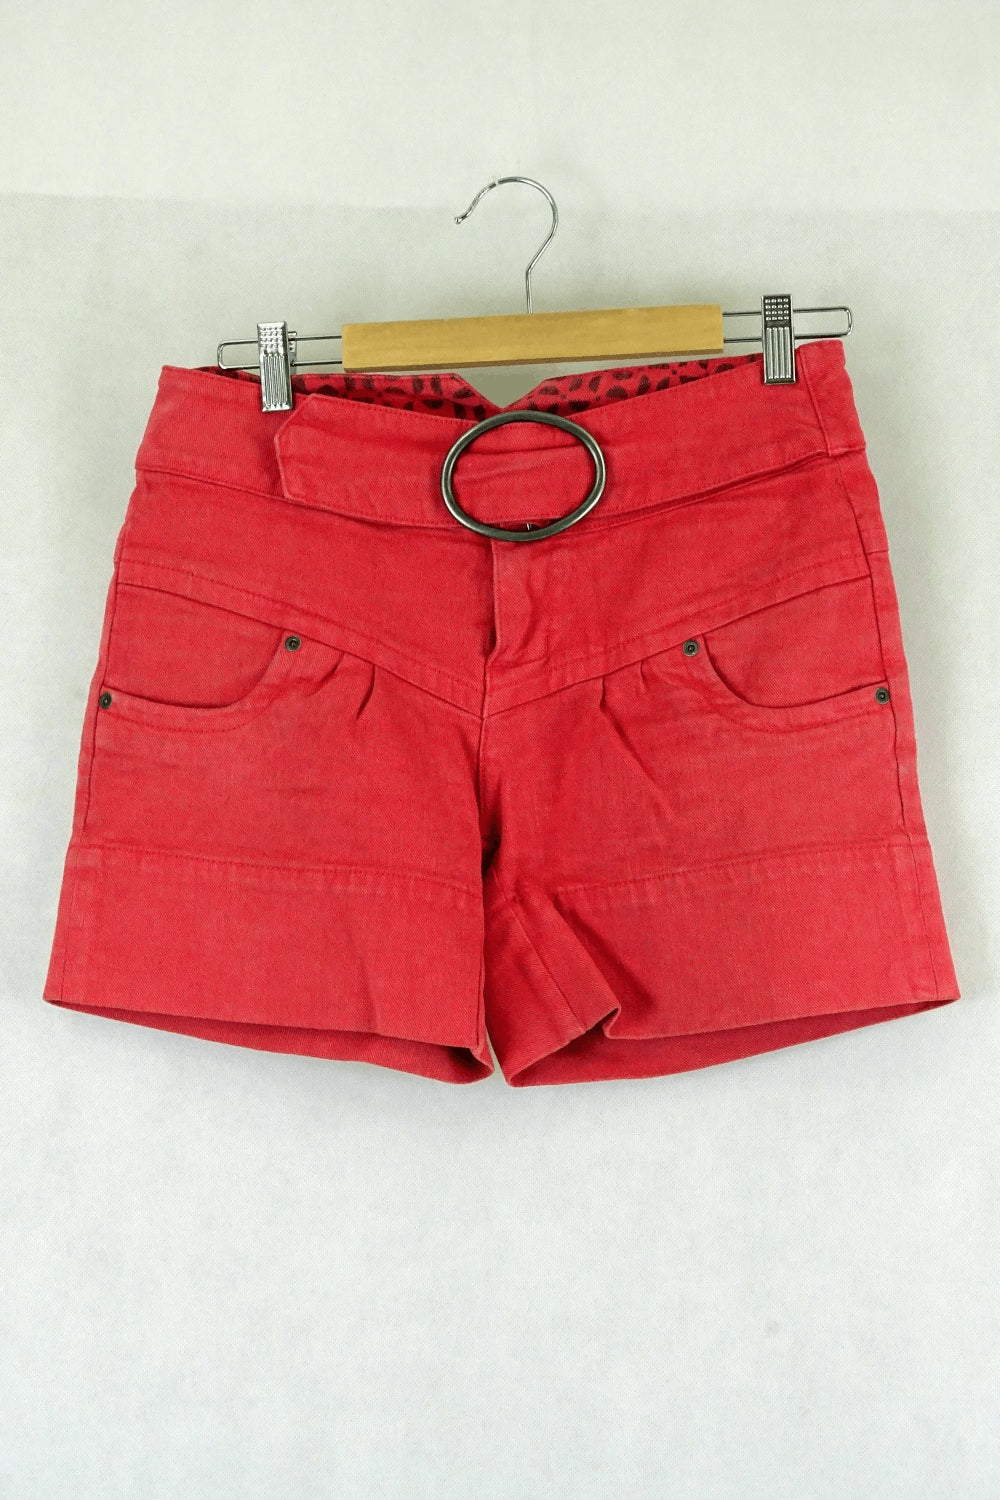 Dc Red Denim Shorts 27 (Au 9)